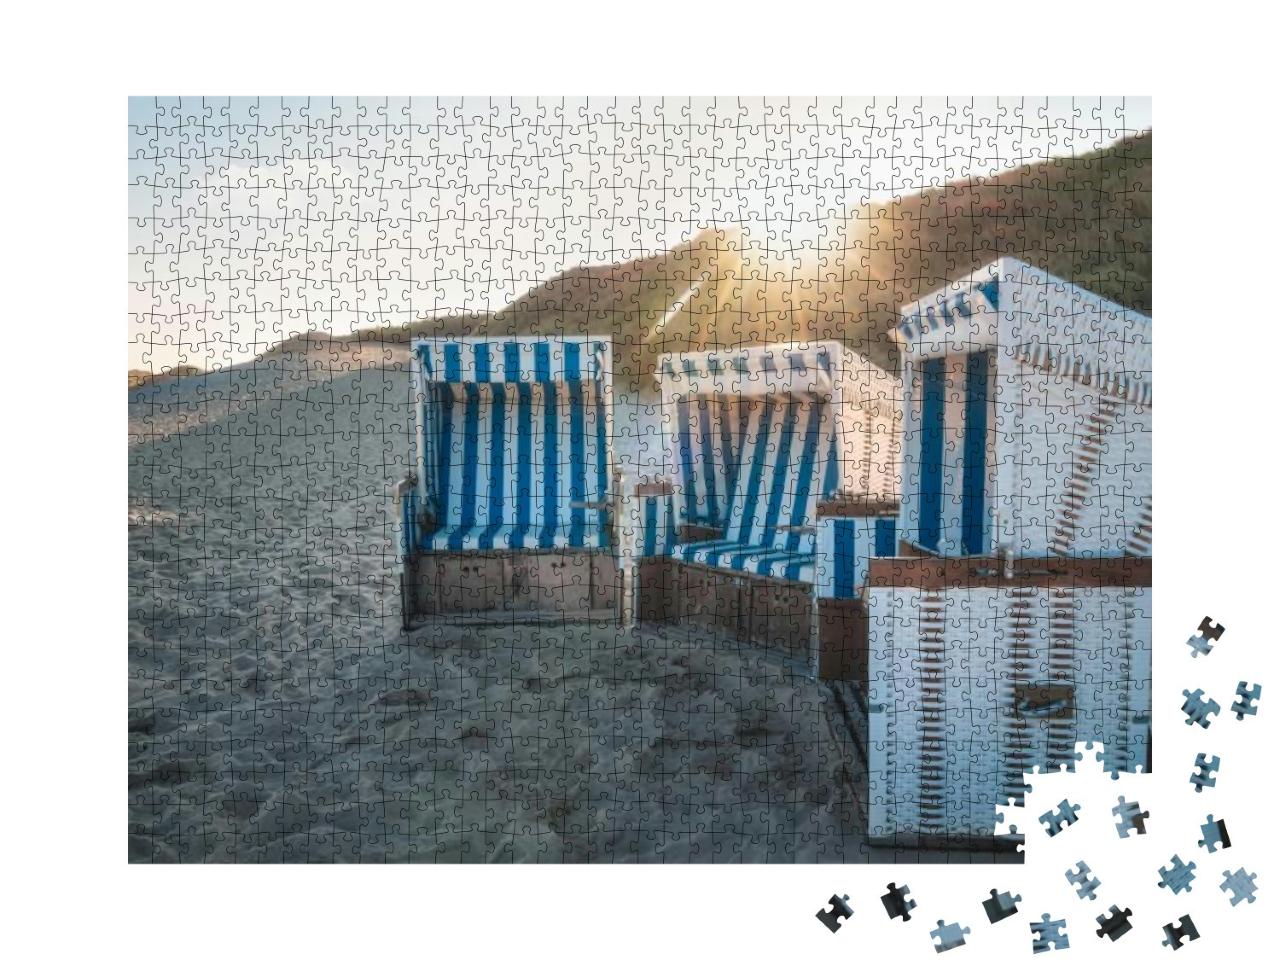 Puzzle 1000 Teile „Strandkörbe bei Sonnenaufgang auf der Insel Sylt“